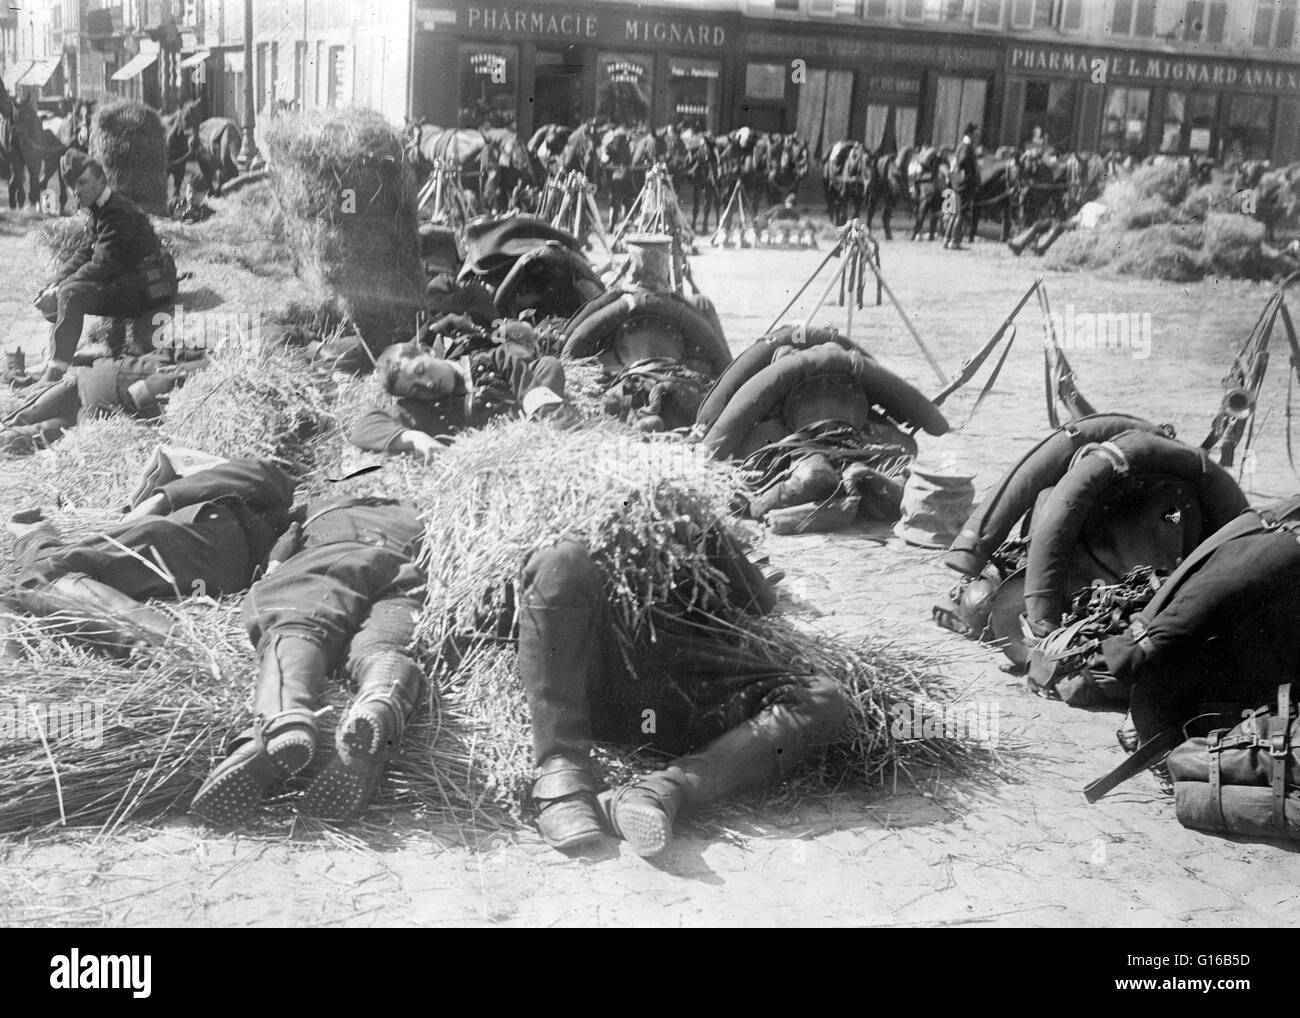 Soldati francesi in appoggio sul terreno in una piazza davanti a una farmacia in Francia durante la guerra mondiale I. Nel gennaio 1914, l'esercito francese aveva 47 divisioni, composta da 777,000 soldati francesi e di 47.000 truppe coloniali. Un altro 2,9 milioni di uomini sono stati mobilitati Foto Stock